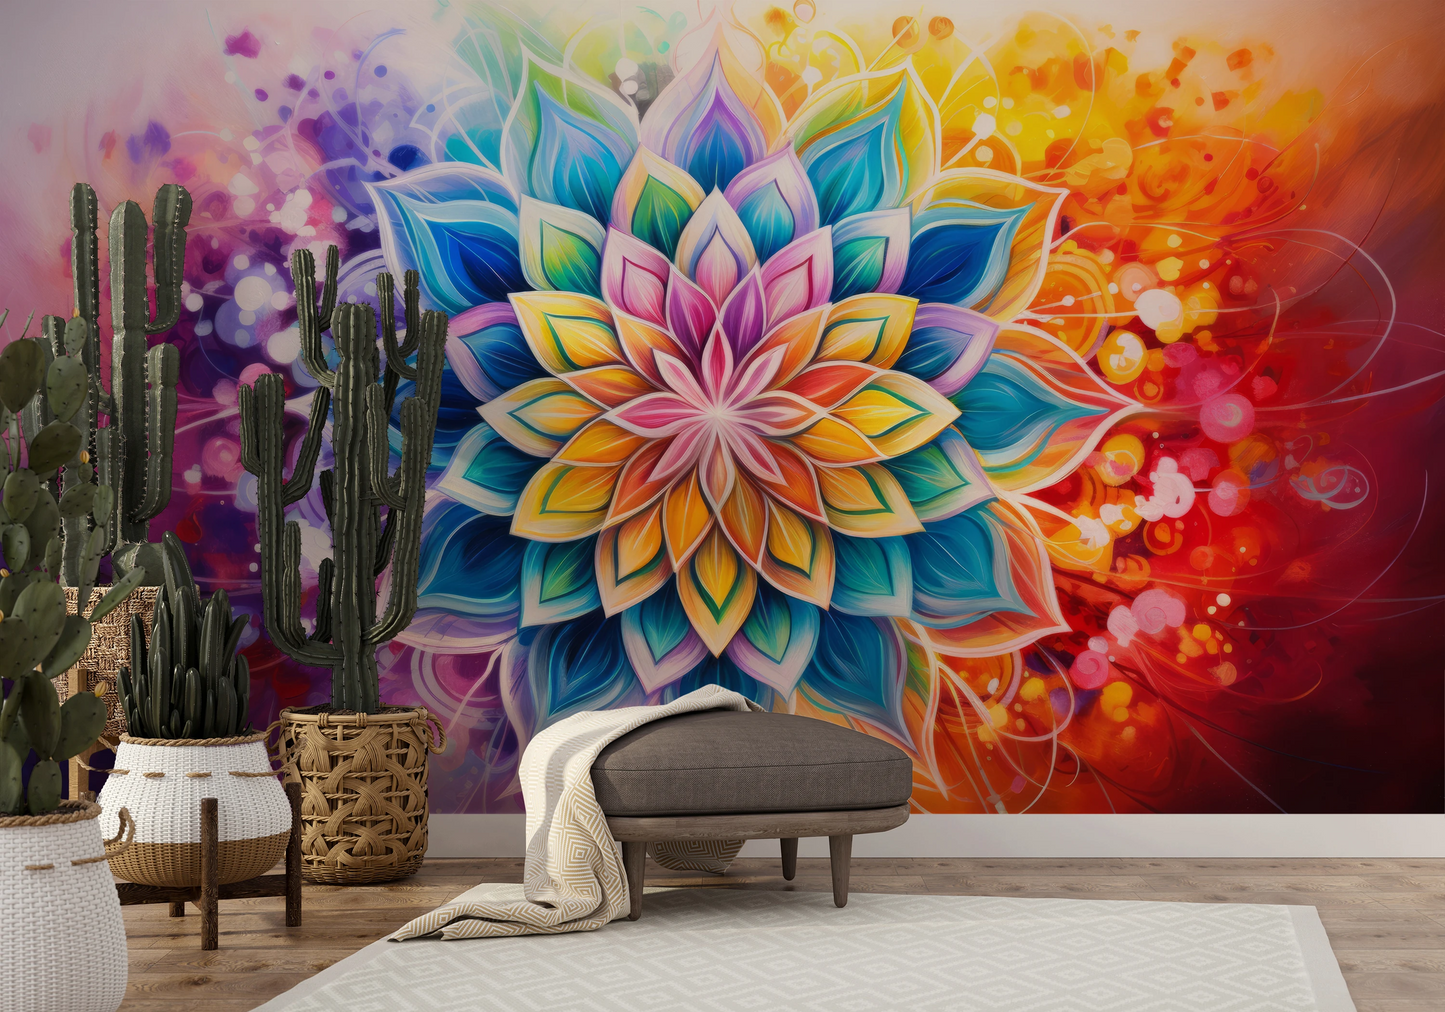 Wzór fototapety artystycznej o nazwie Floral Harmony pokazanej w aranżacji wnętrza.